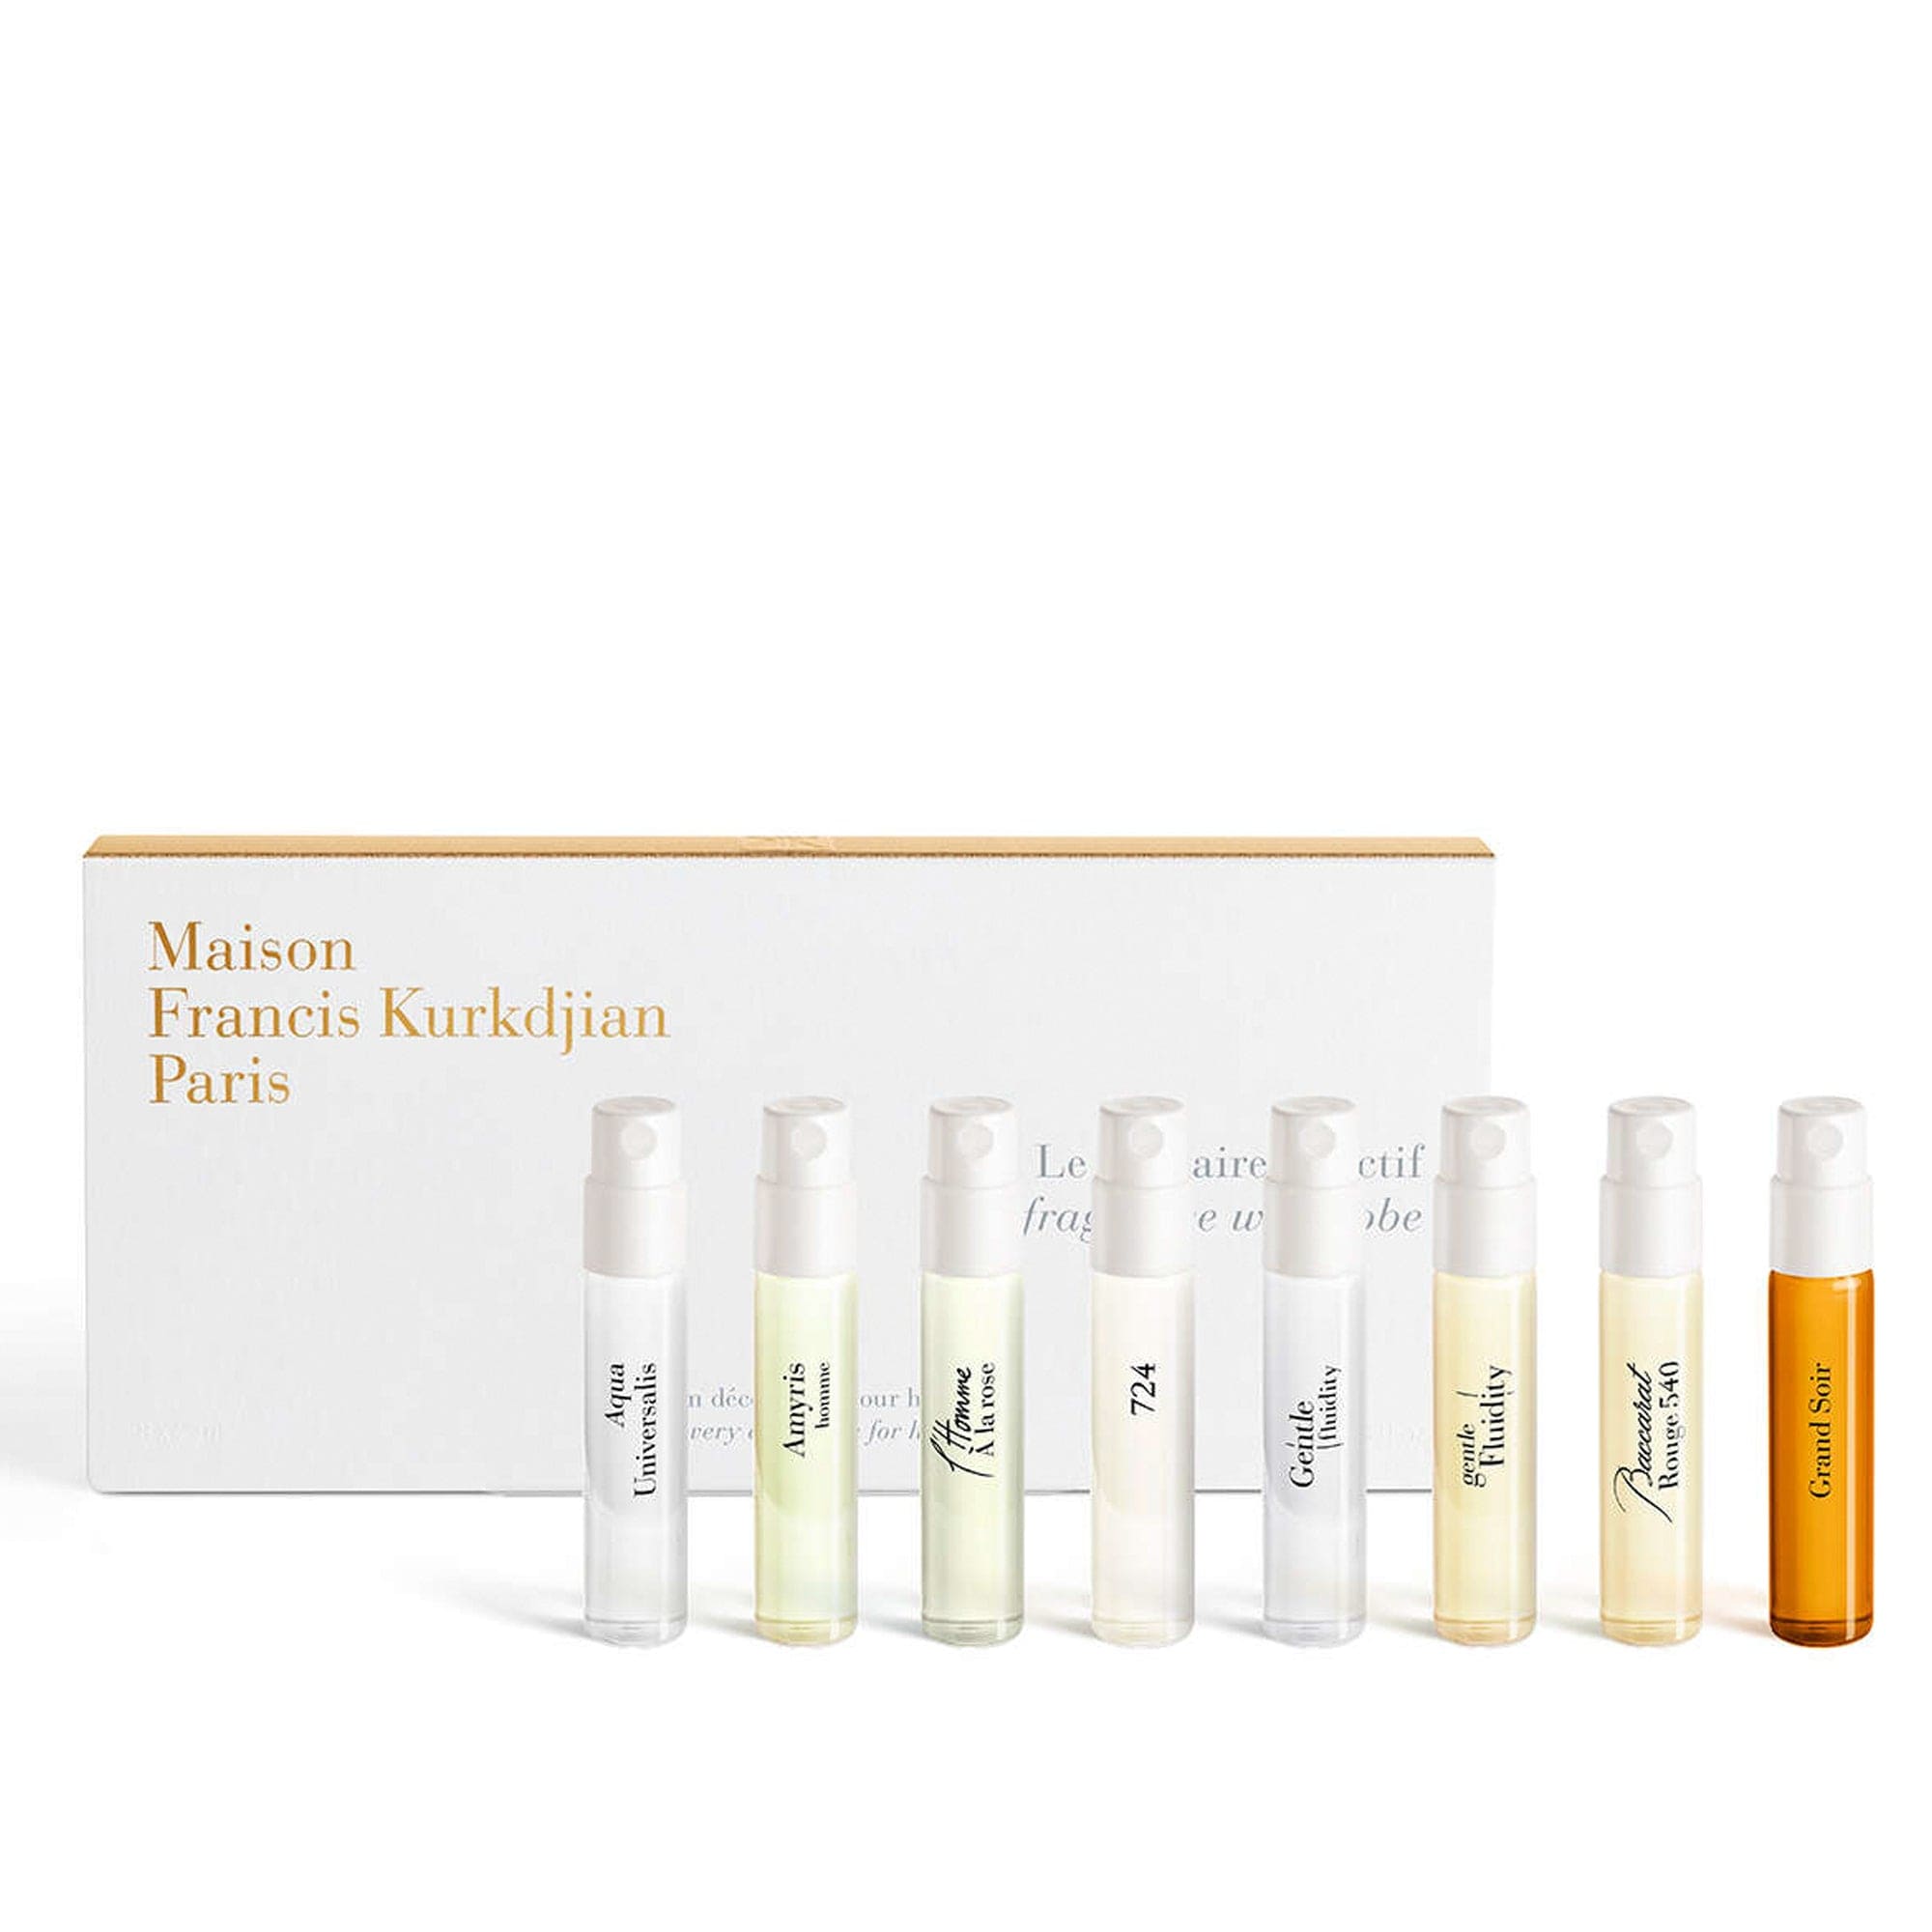 Pack de descoberta de fragrâncias para homem Maison Francis Kurkdjian.